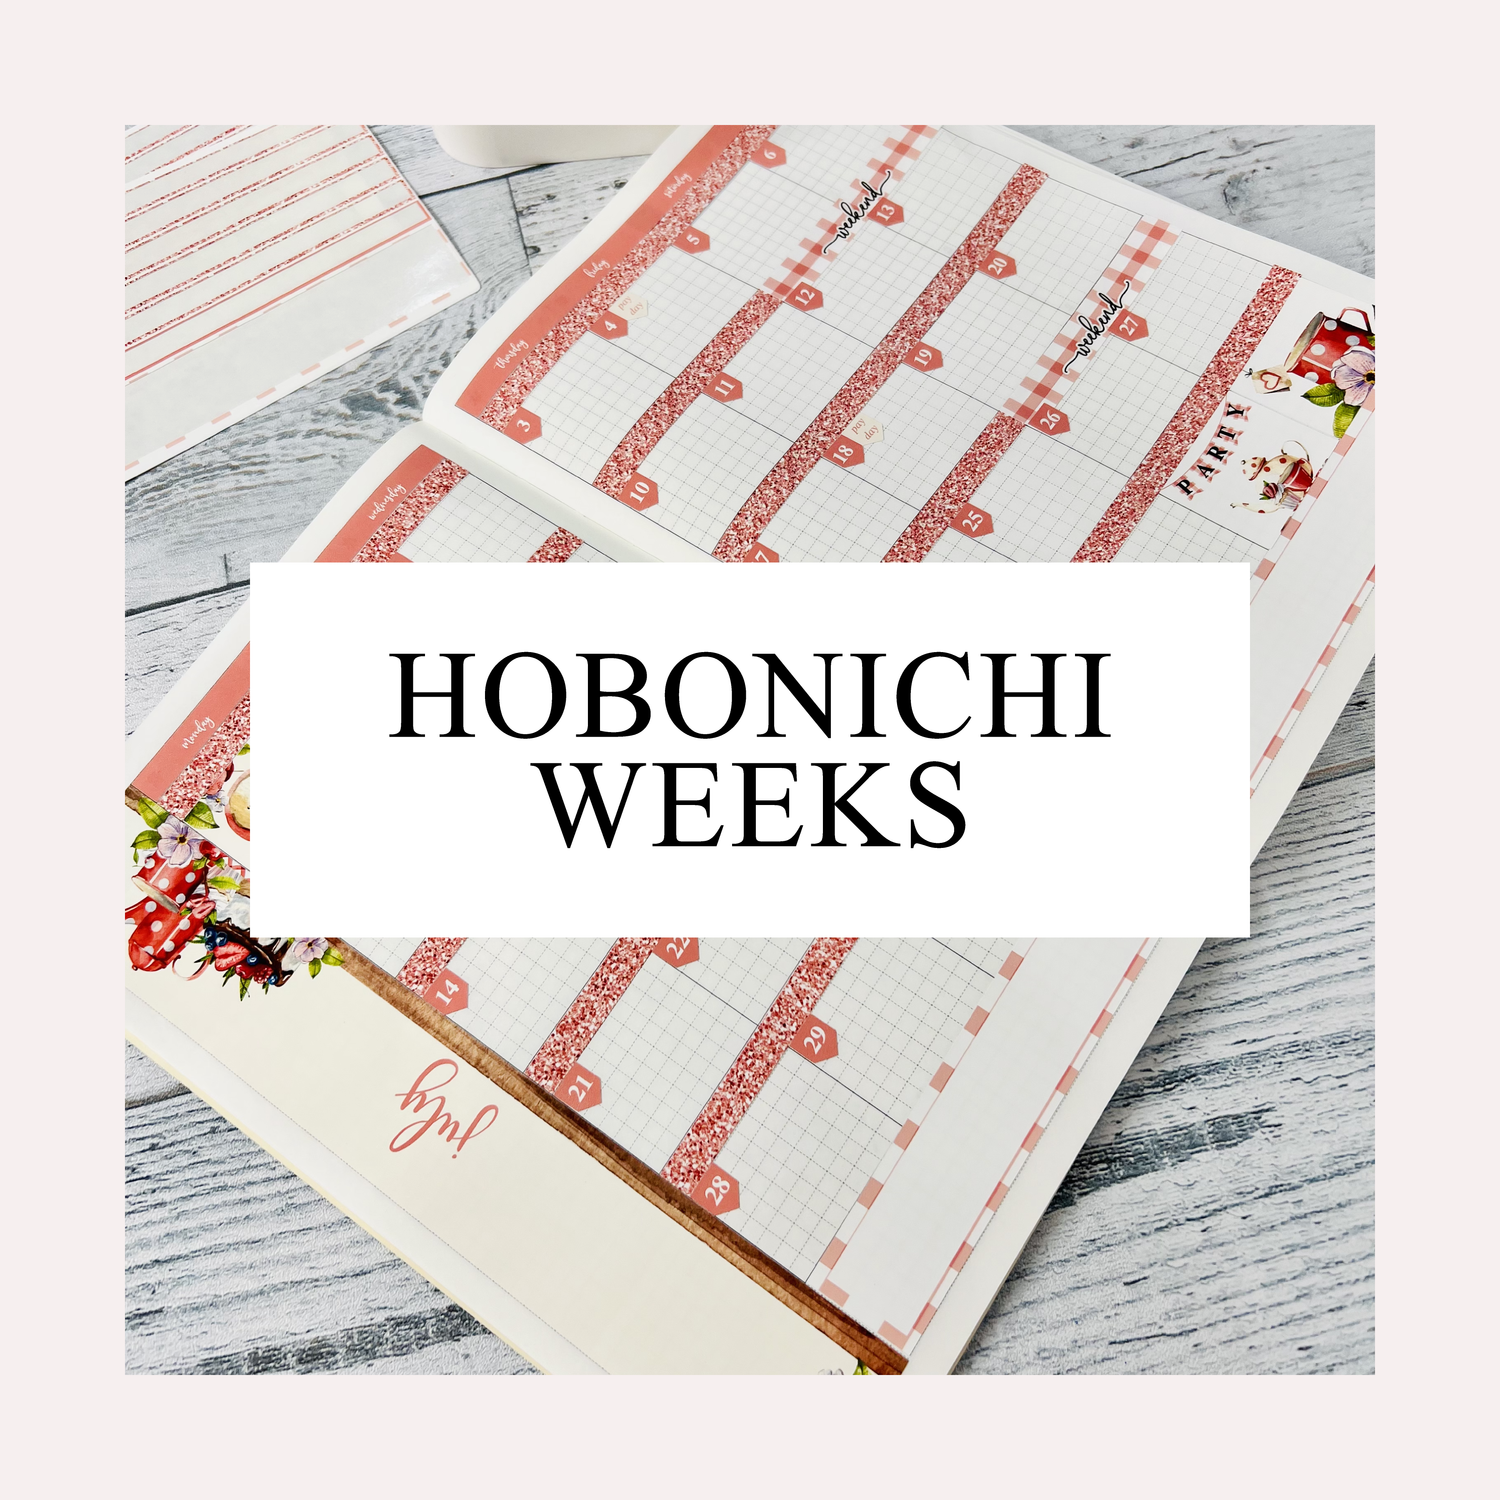 HOBONICHI WEEKS